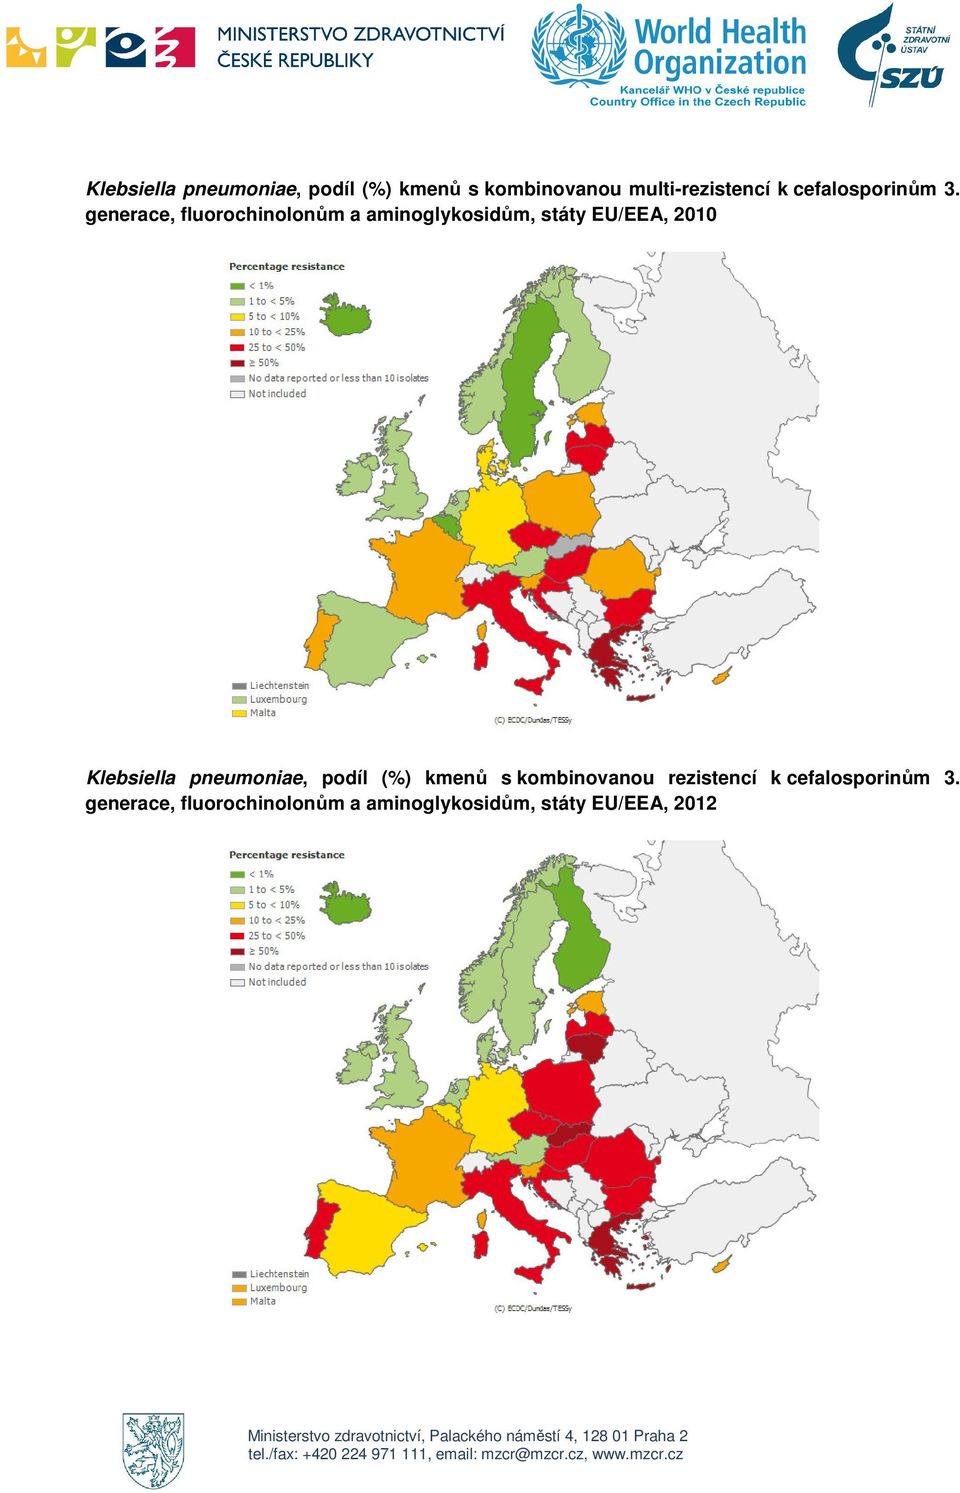 generace, fluorochinolonům a aminoglykosidům, státy EU/EEA, 2010 Klebsiella